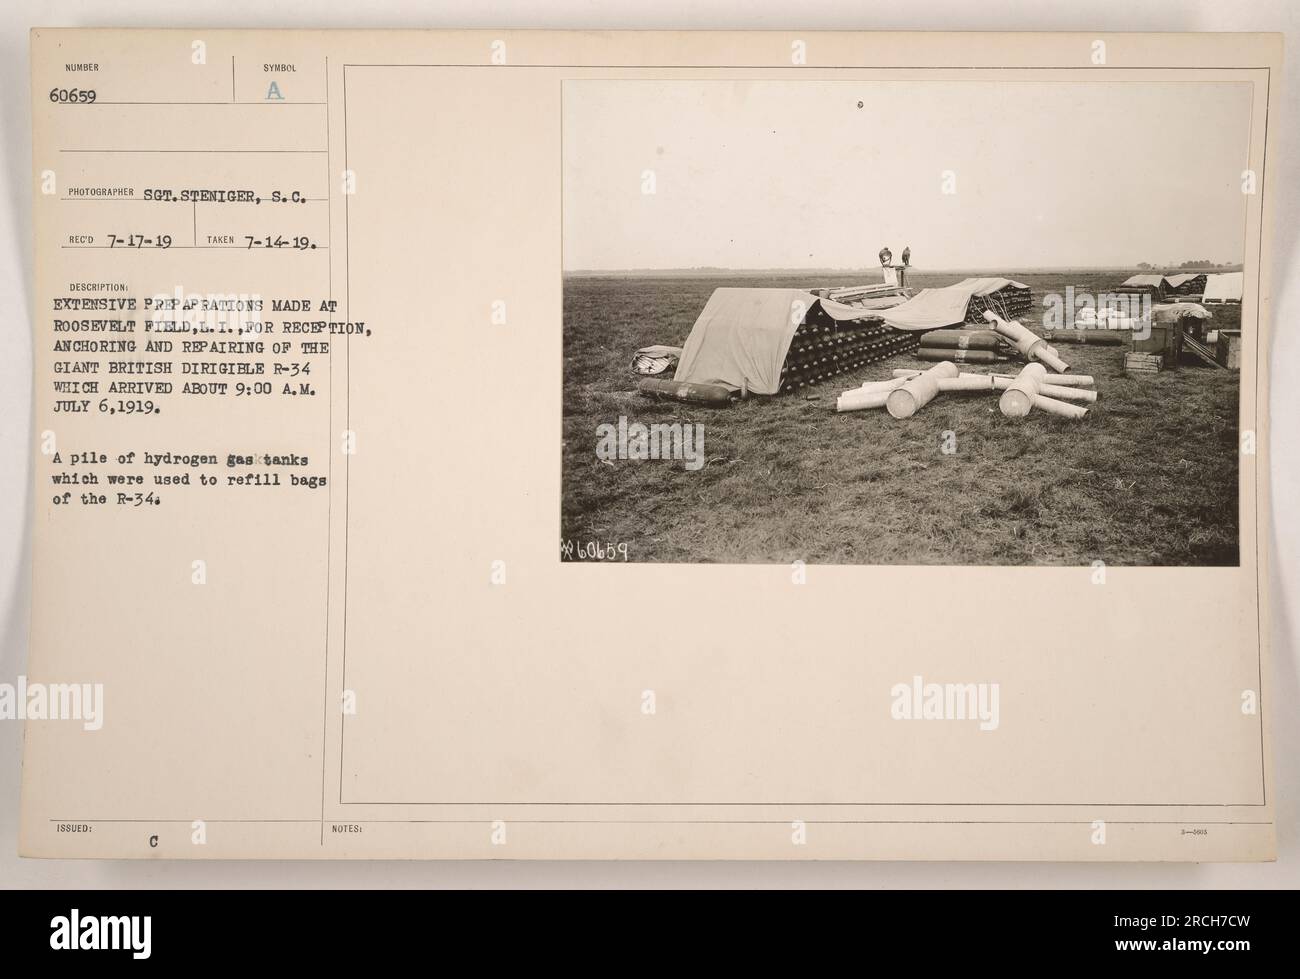 L'immagine mostra una pila di serbatoi di idrogeno al Roosevelt Field, L.I., utilizzati per riempire i sacchetti del gigantesco dirigibile britannico R-34. Ciò avvenne come parte dei preparativi per il ricevimento, l'ancoraggio e la riparazione del R-34, che arrivò il 6 luglio 1919. La foto è stata scattata il 14 luglio 1919 da Sgt. Steniger, S.C. Foto Stock